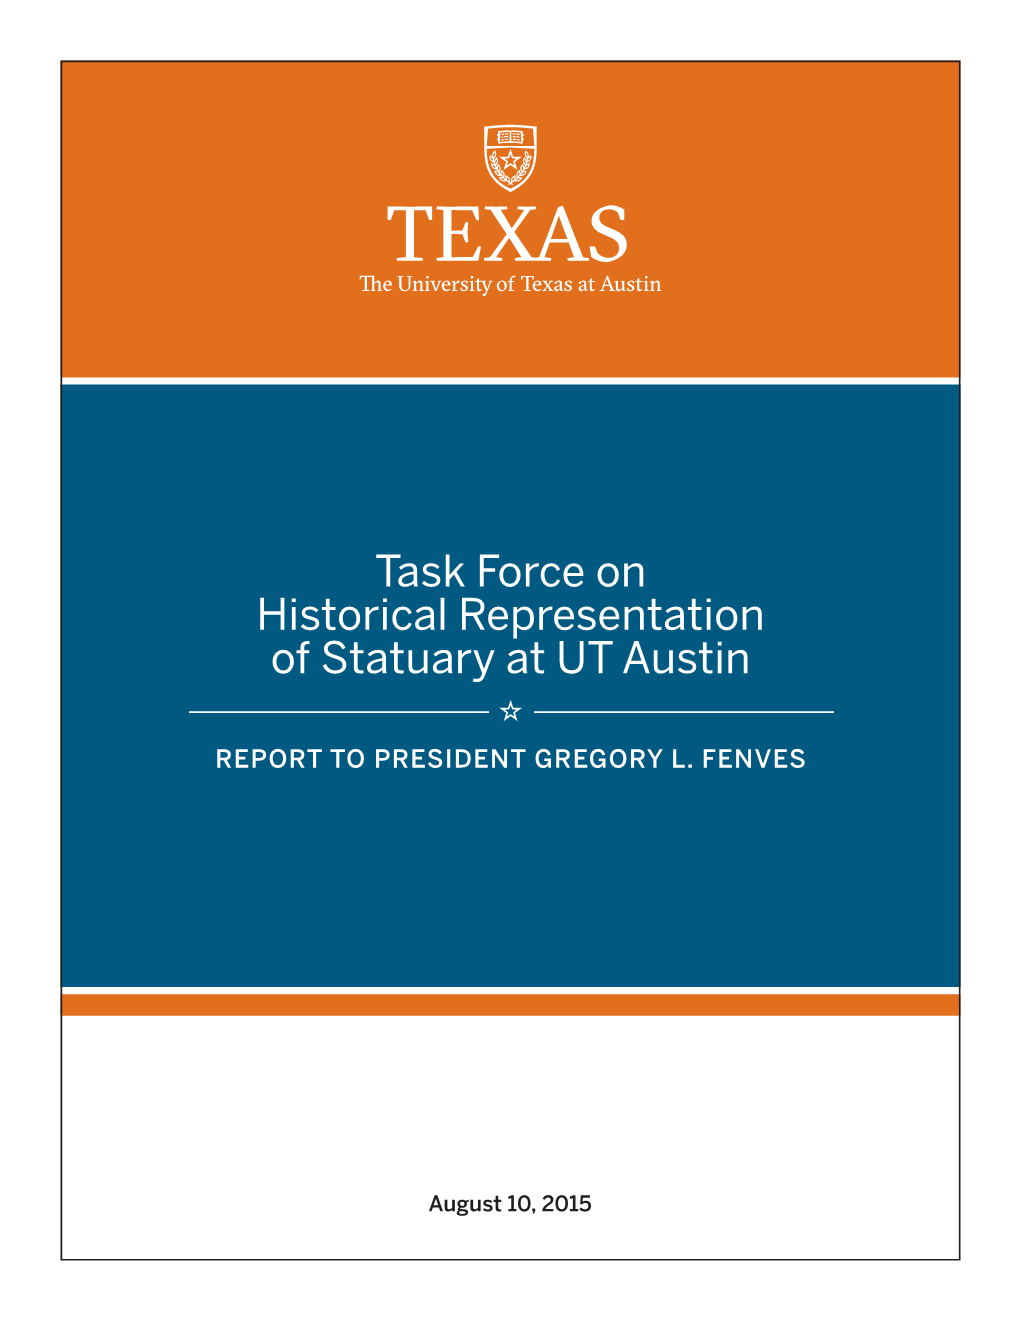 Task Force on Historical Representation of Statuary at UT Austin